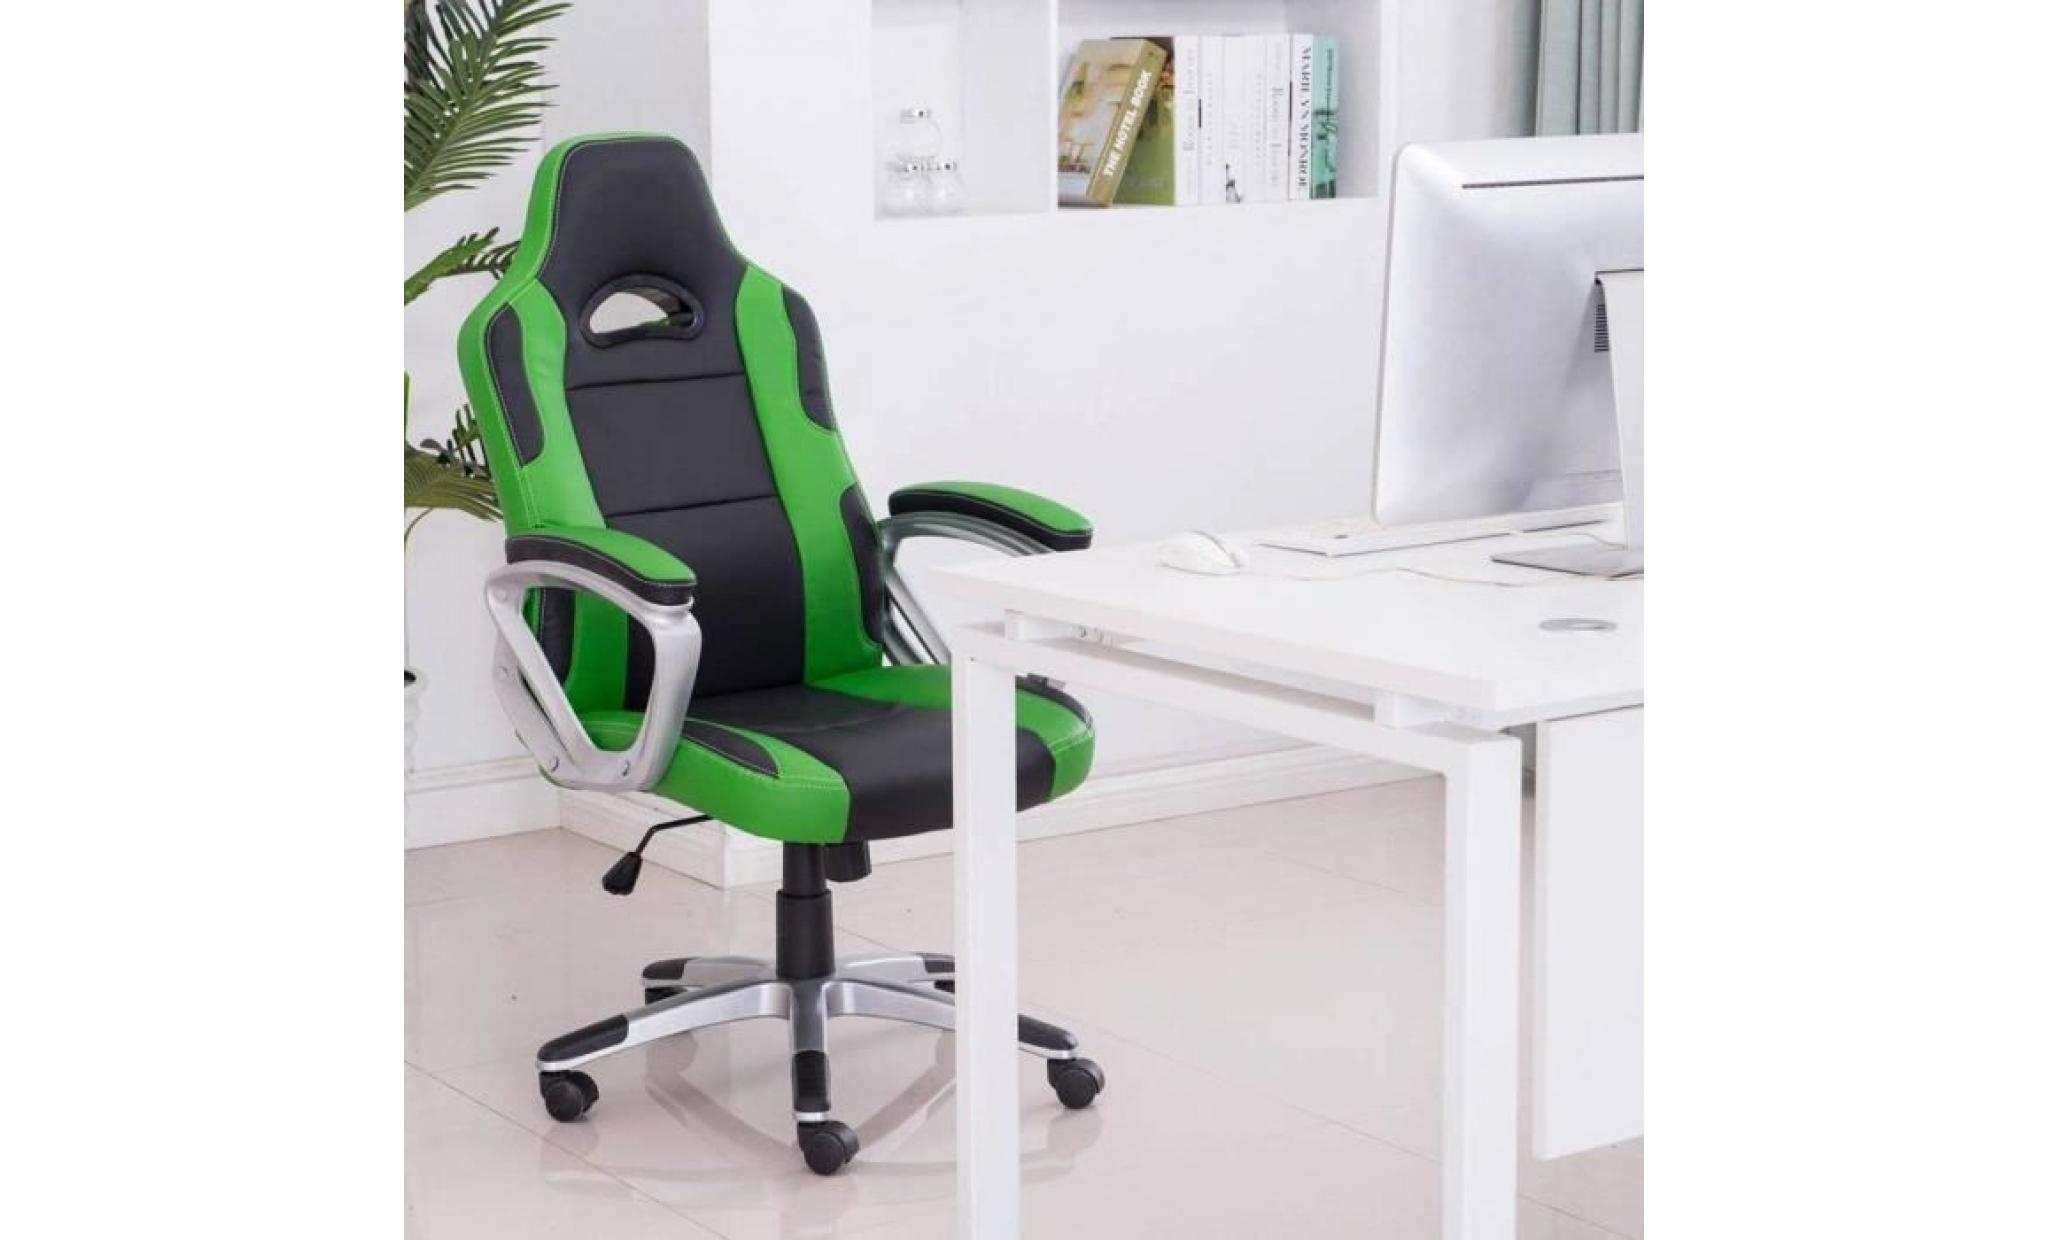 racing chaise de bureau pu   gaming chaise   fauteuil de bureau   hauteur réglable   vert   intimate wm heat pas cher